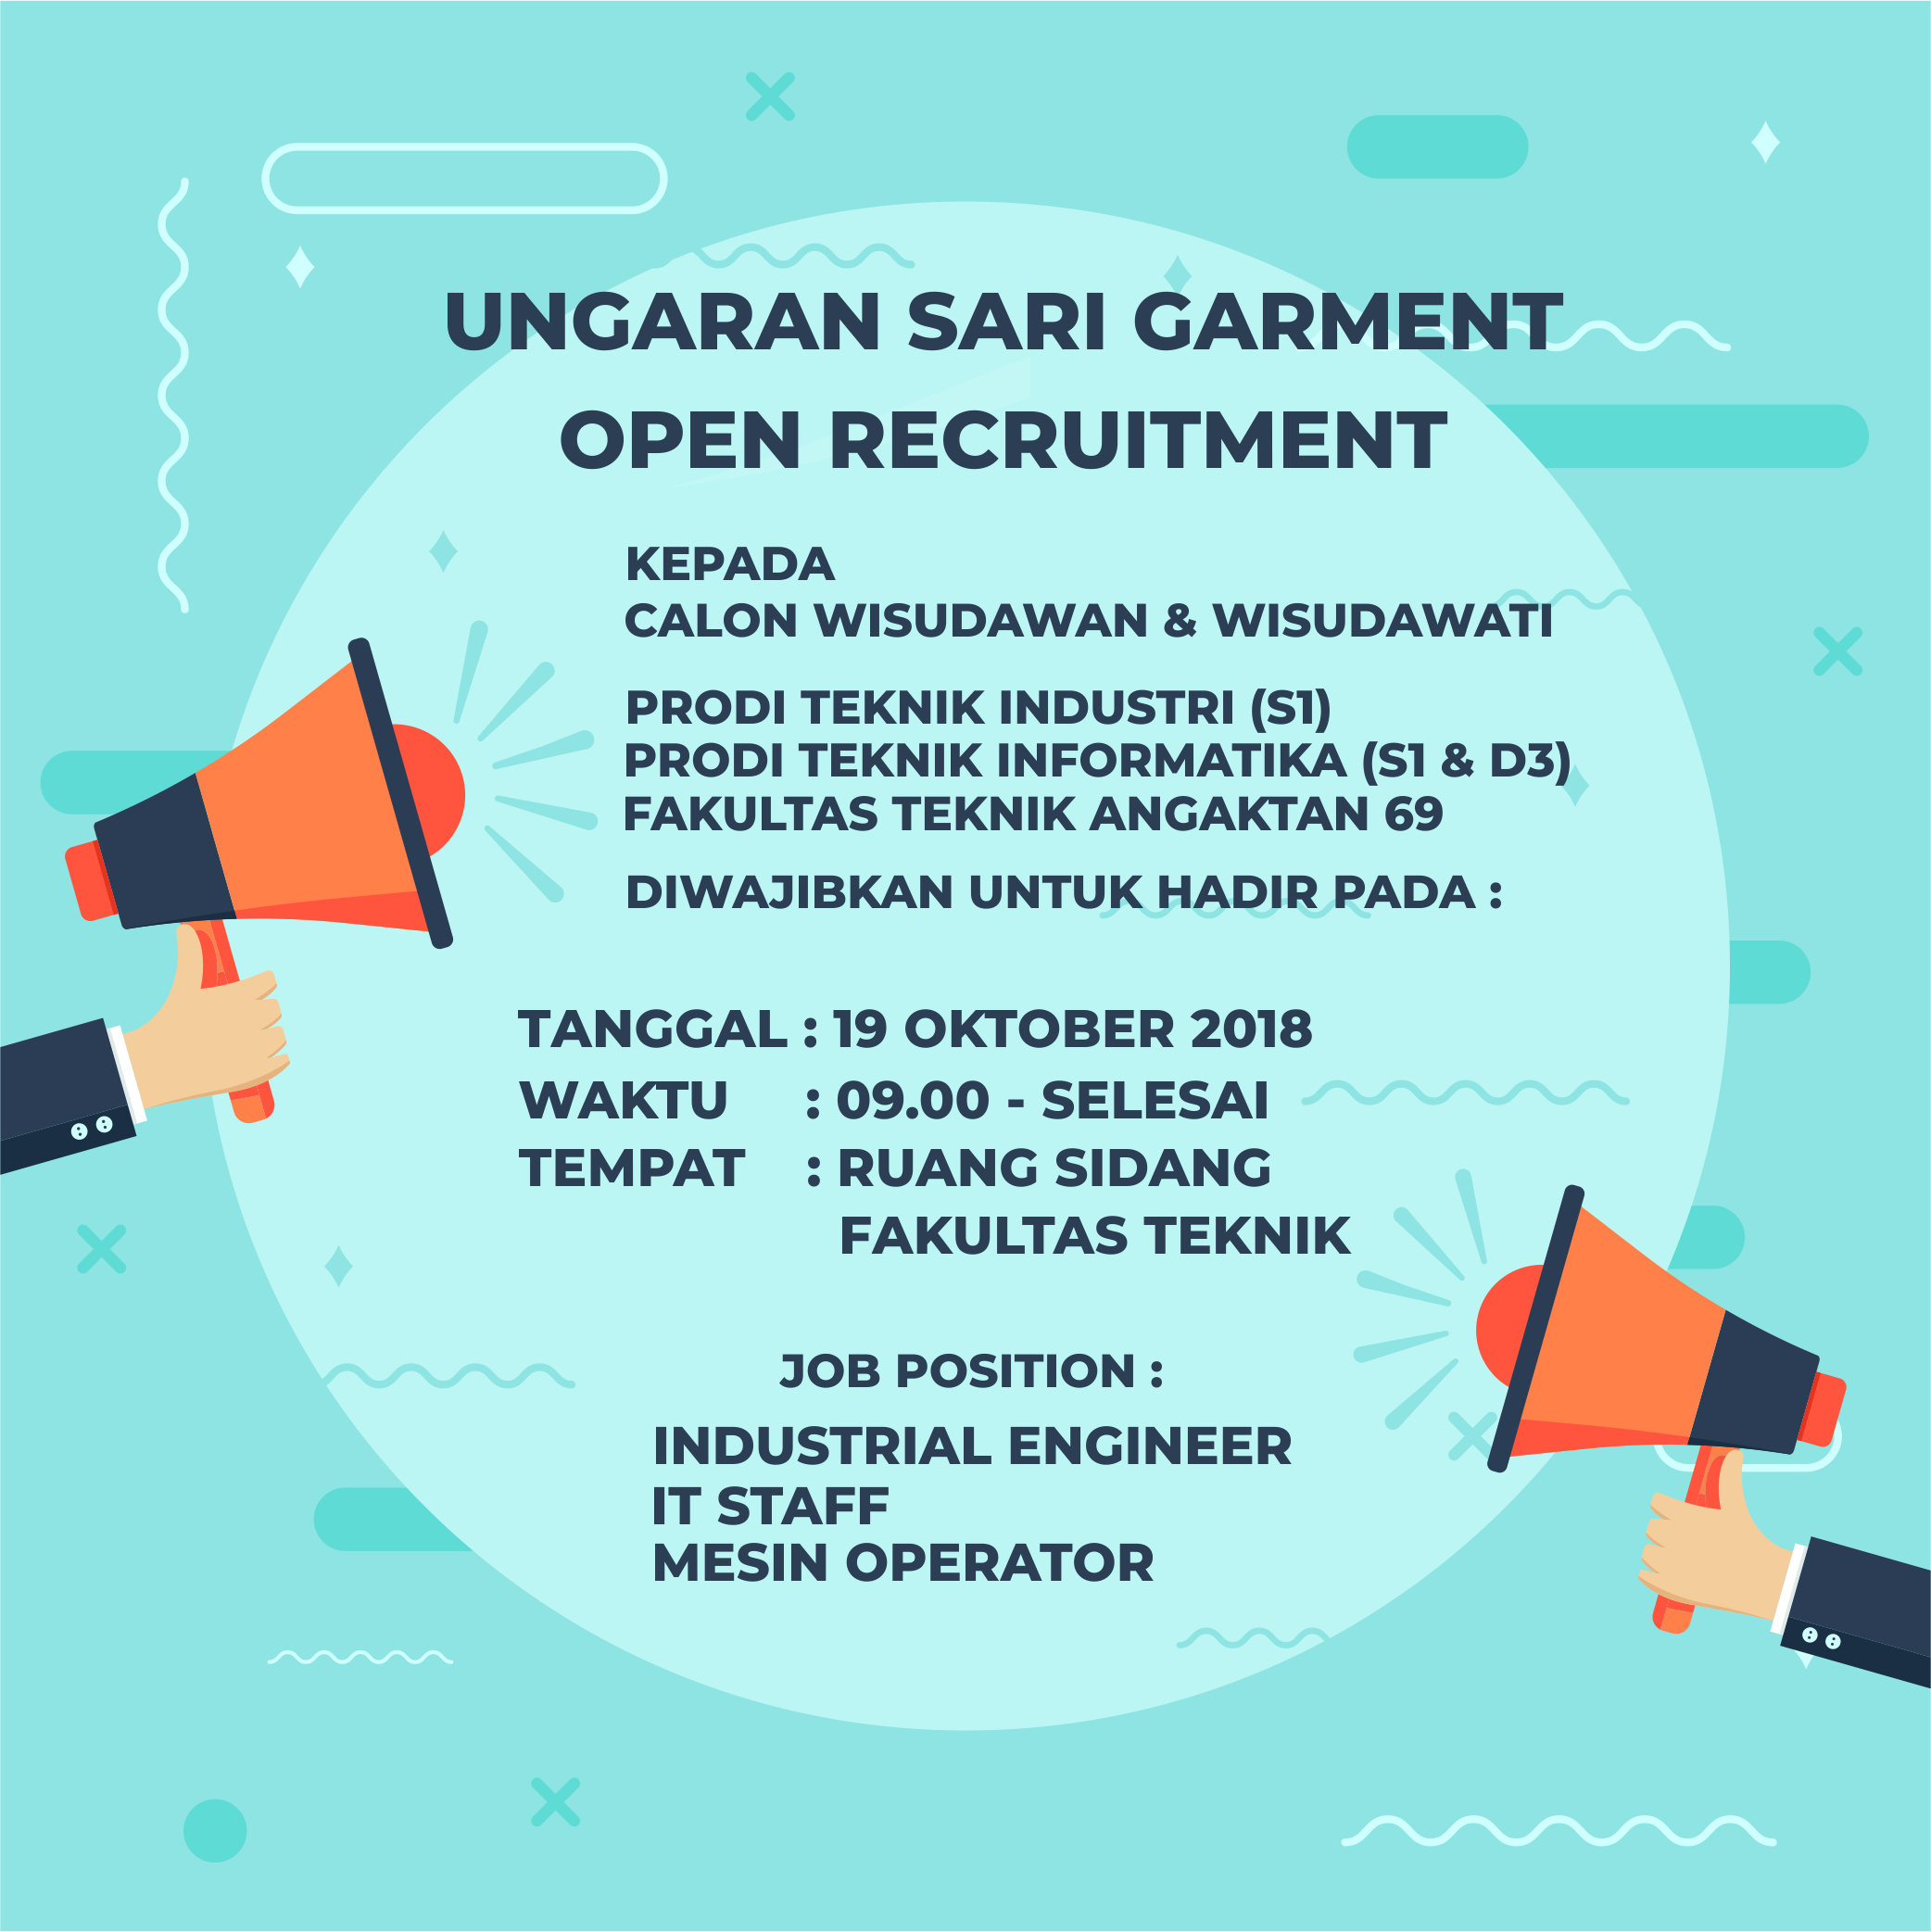 Open Recruitment Ungaran Sari Garment